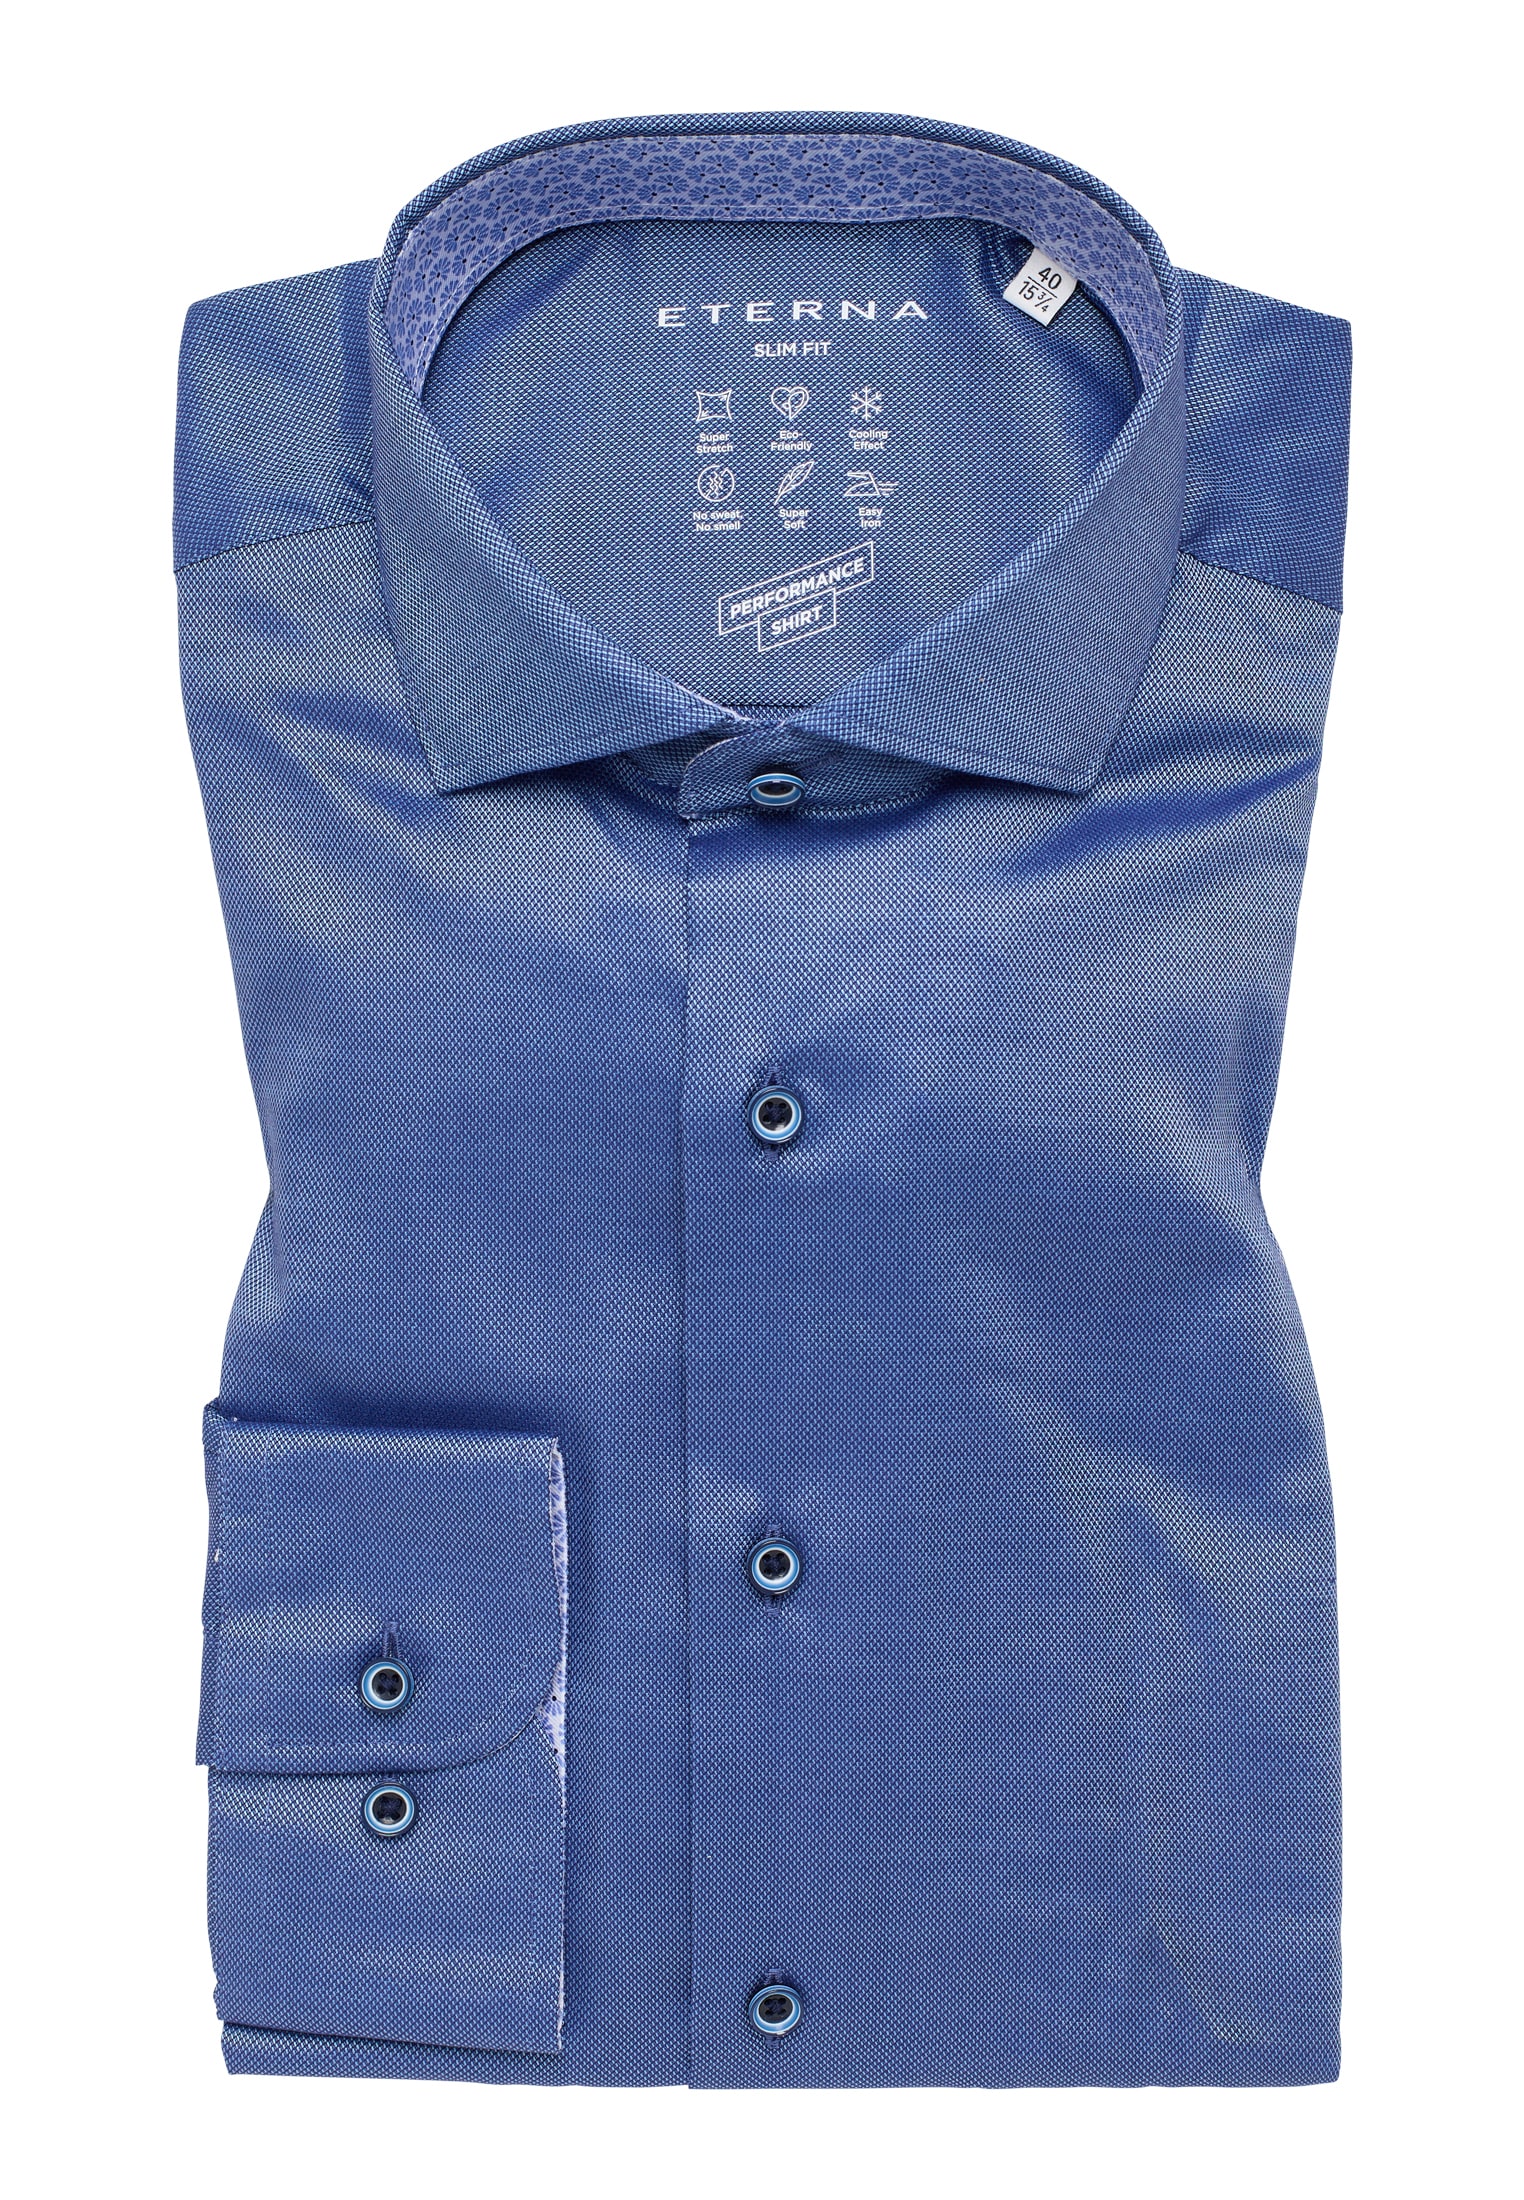 SLIM FIT Performance Shirt 1SH12542-01-41-41-1/1 | | blau in | strukturiert 41 blau Langarm 